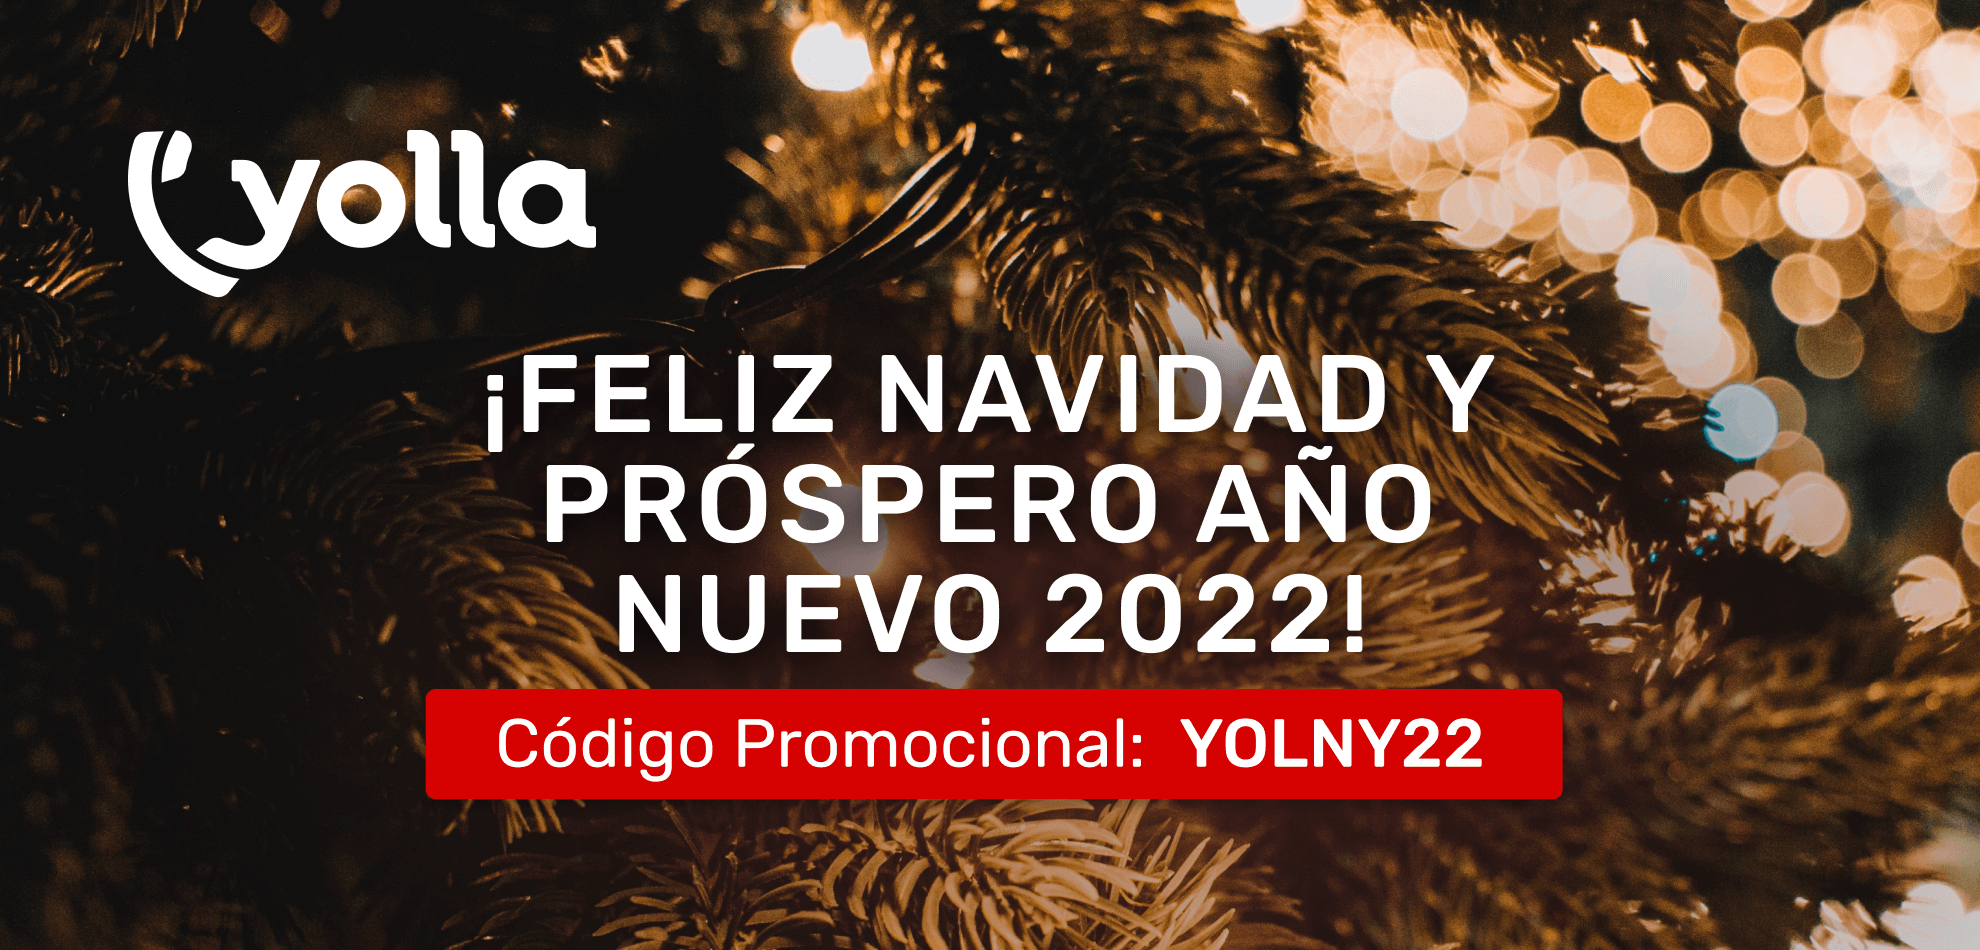 ¡Feliz Navidad y Próspero Año Nuevo 2022!